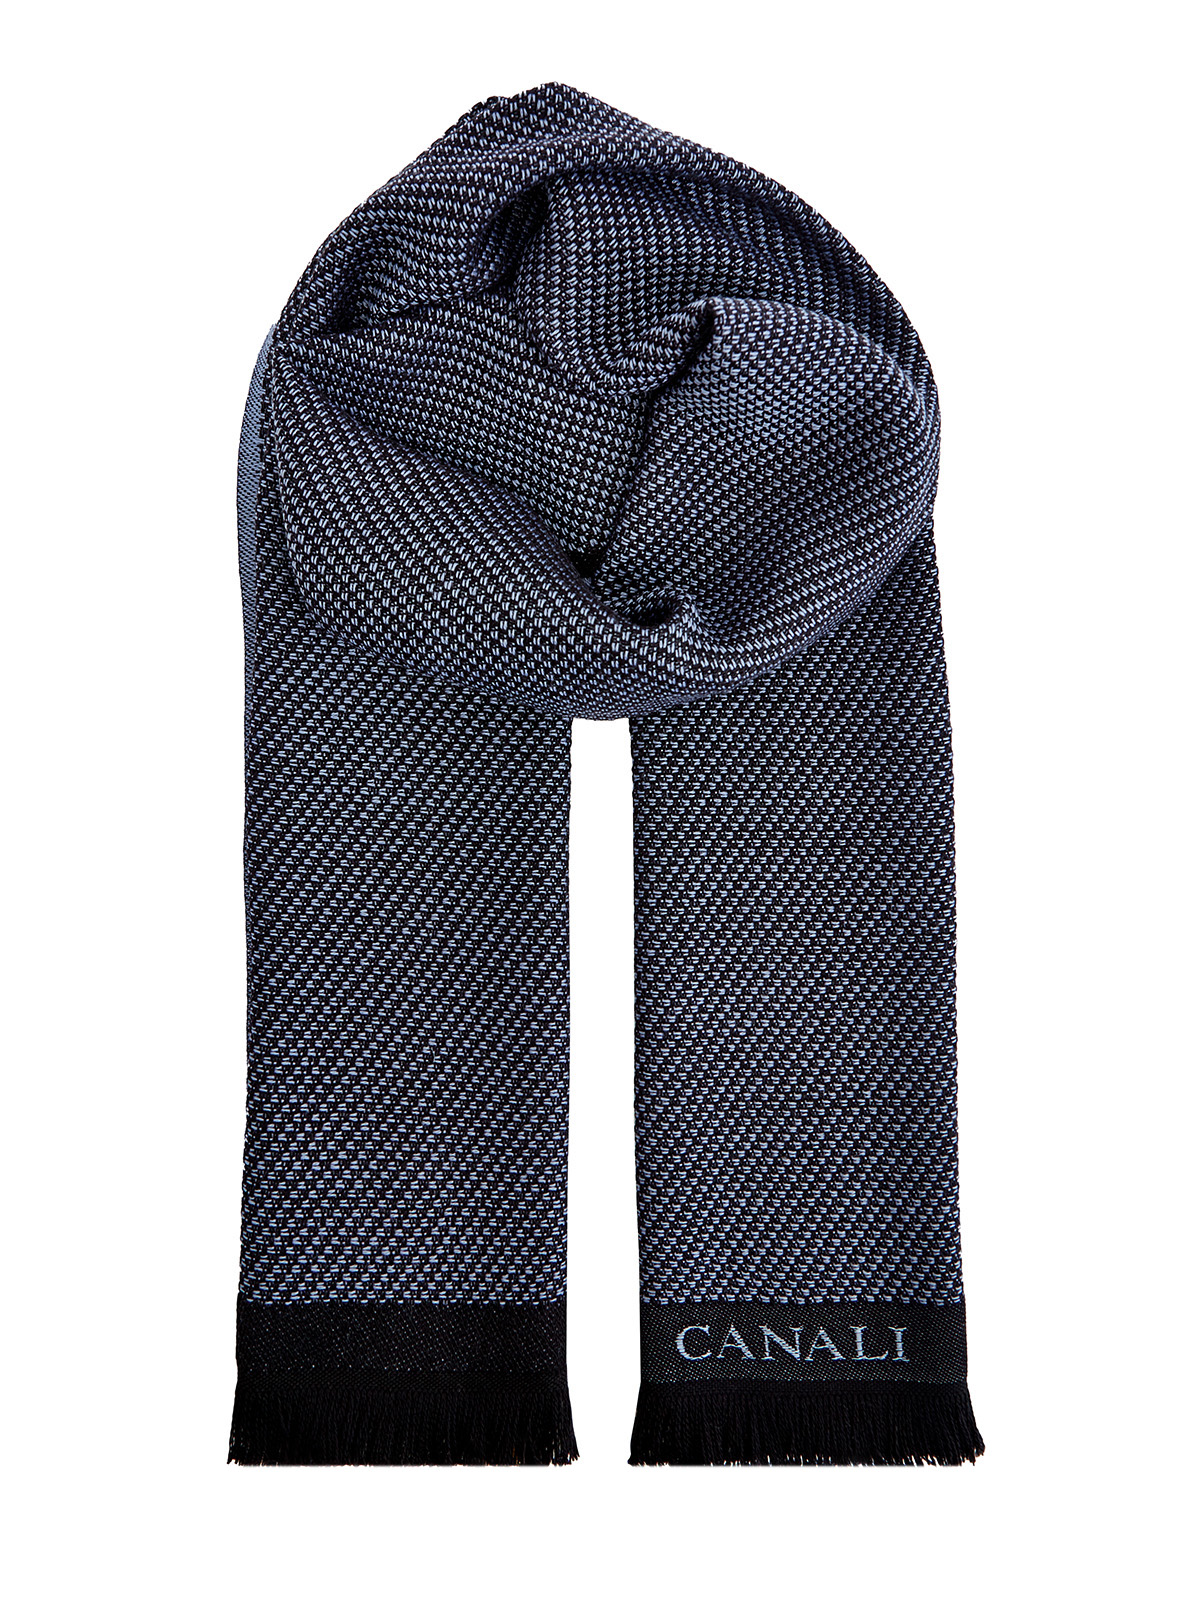 Шерстяной шарф с логотипом ручной работы CANALI, цвет синий, размер 41.5;44;45 - фото 1